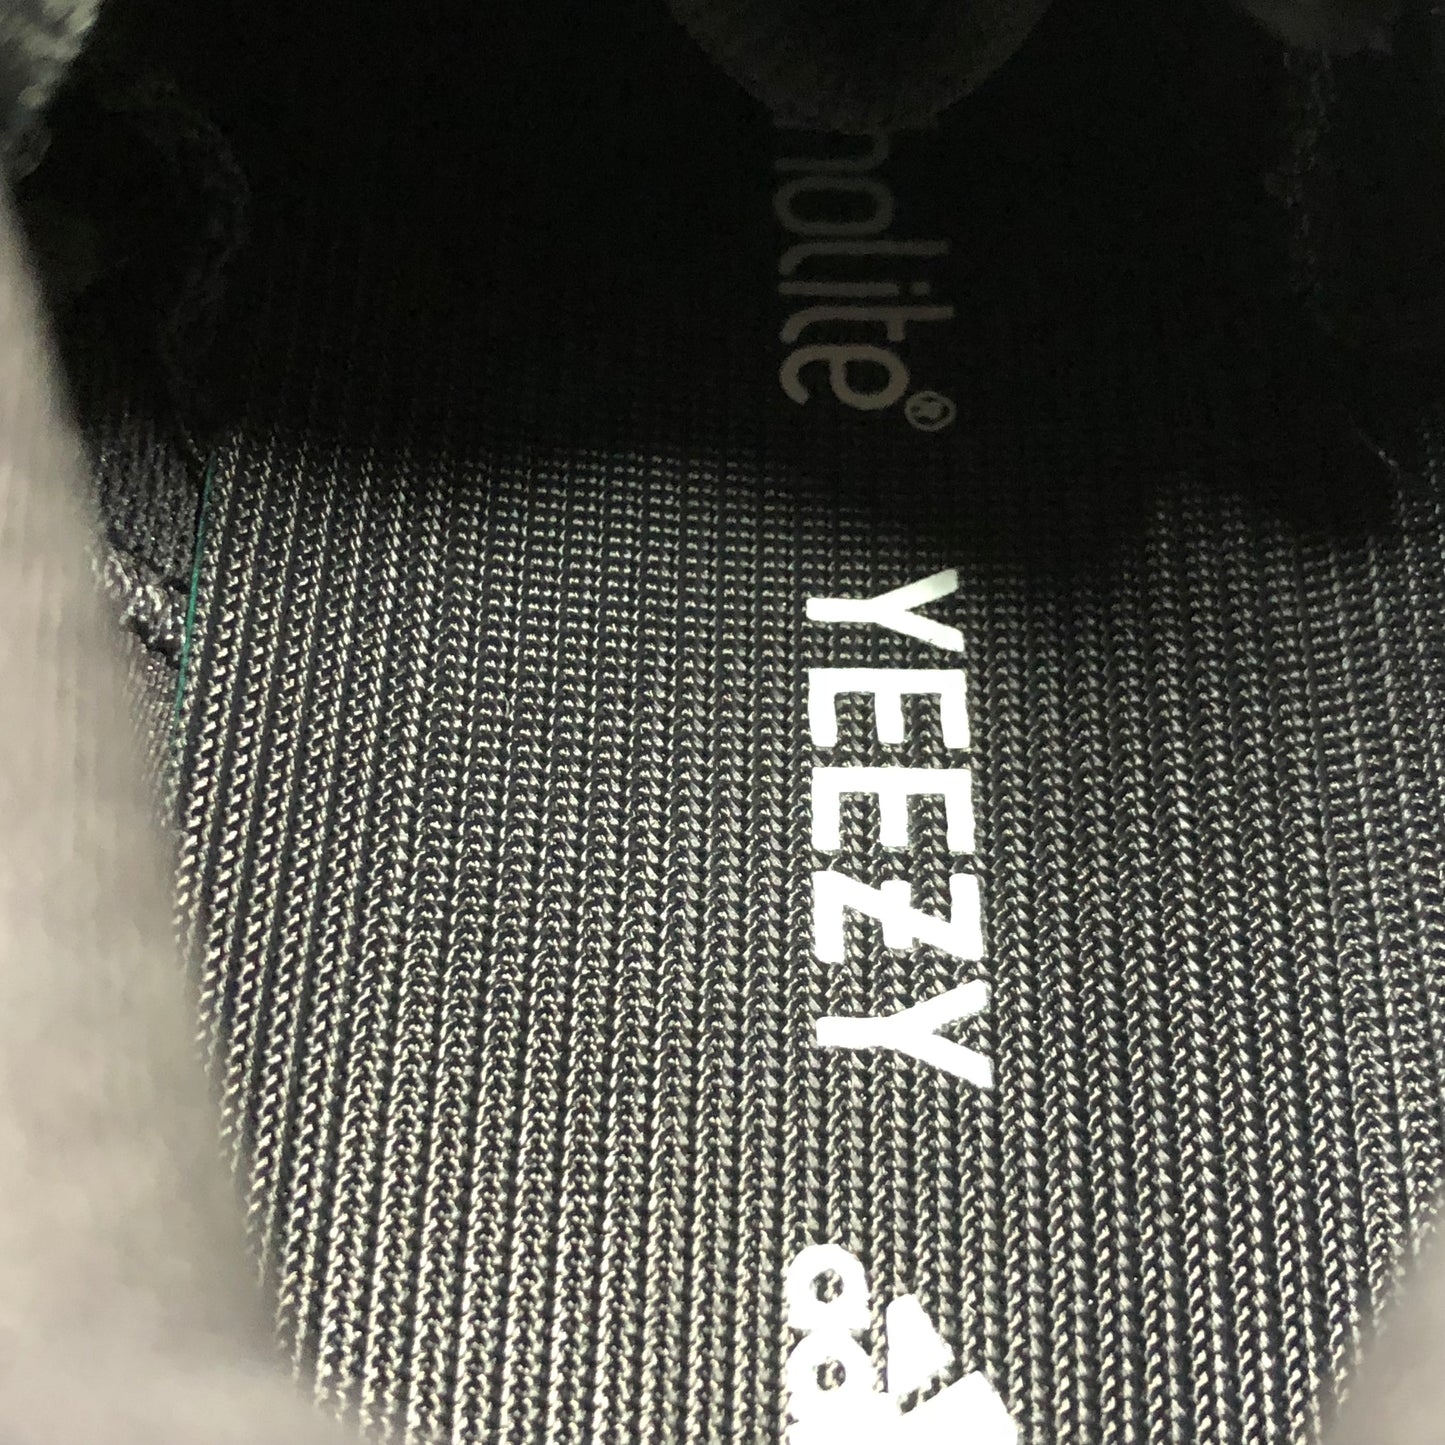 Adidas Yeezy 500 Utility Black Size 5/Size 6.5 F36640